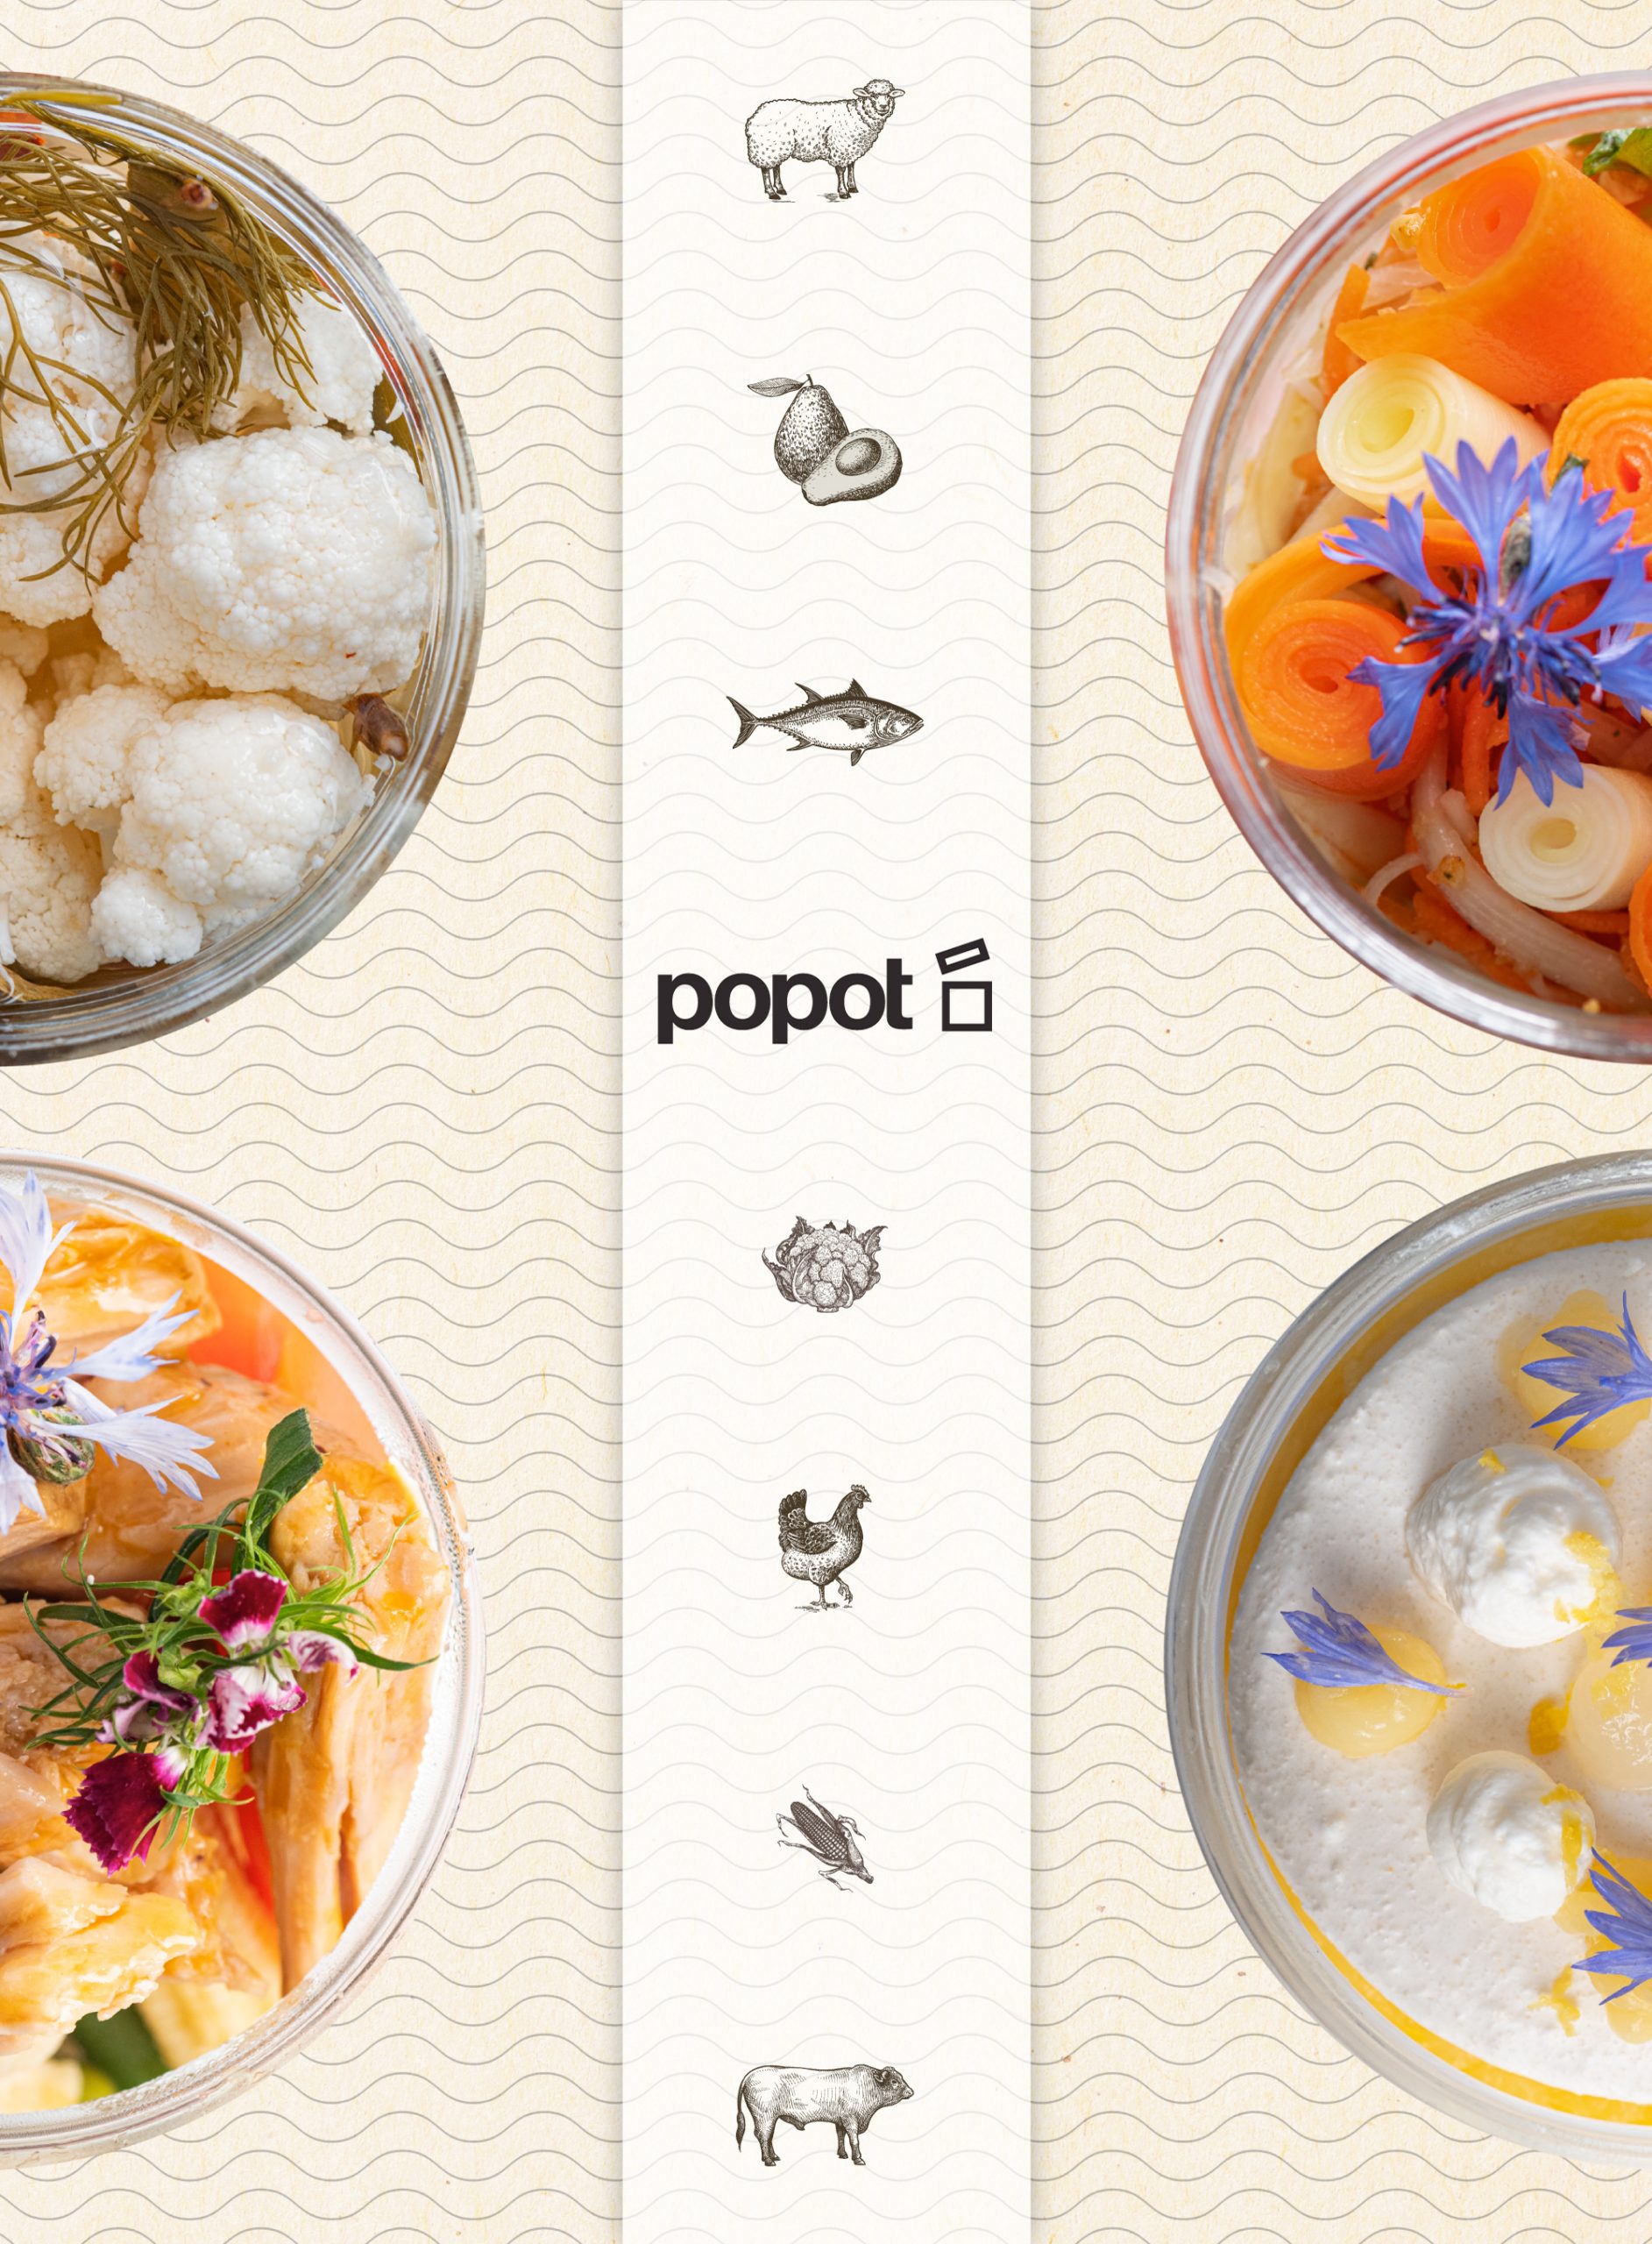 popot-menu-5